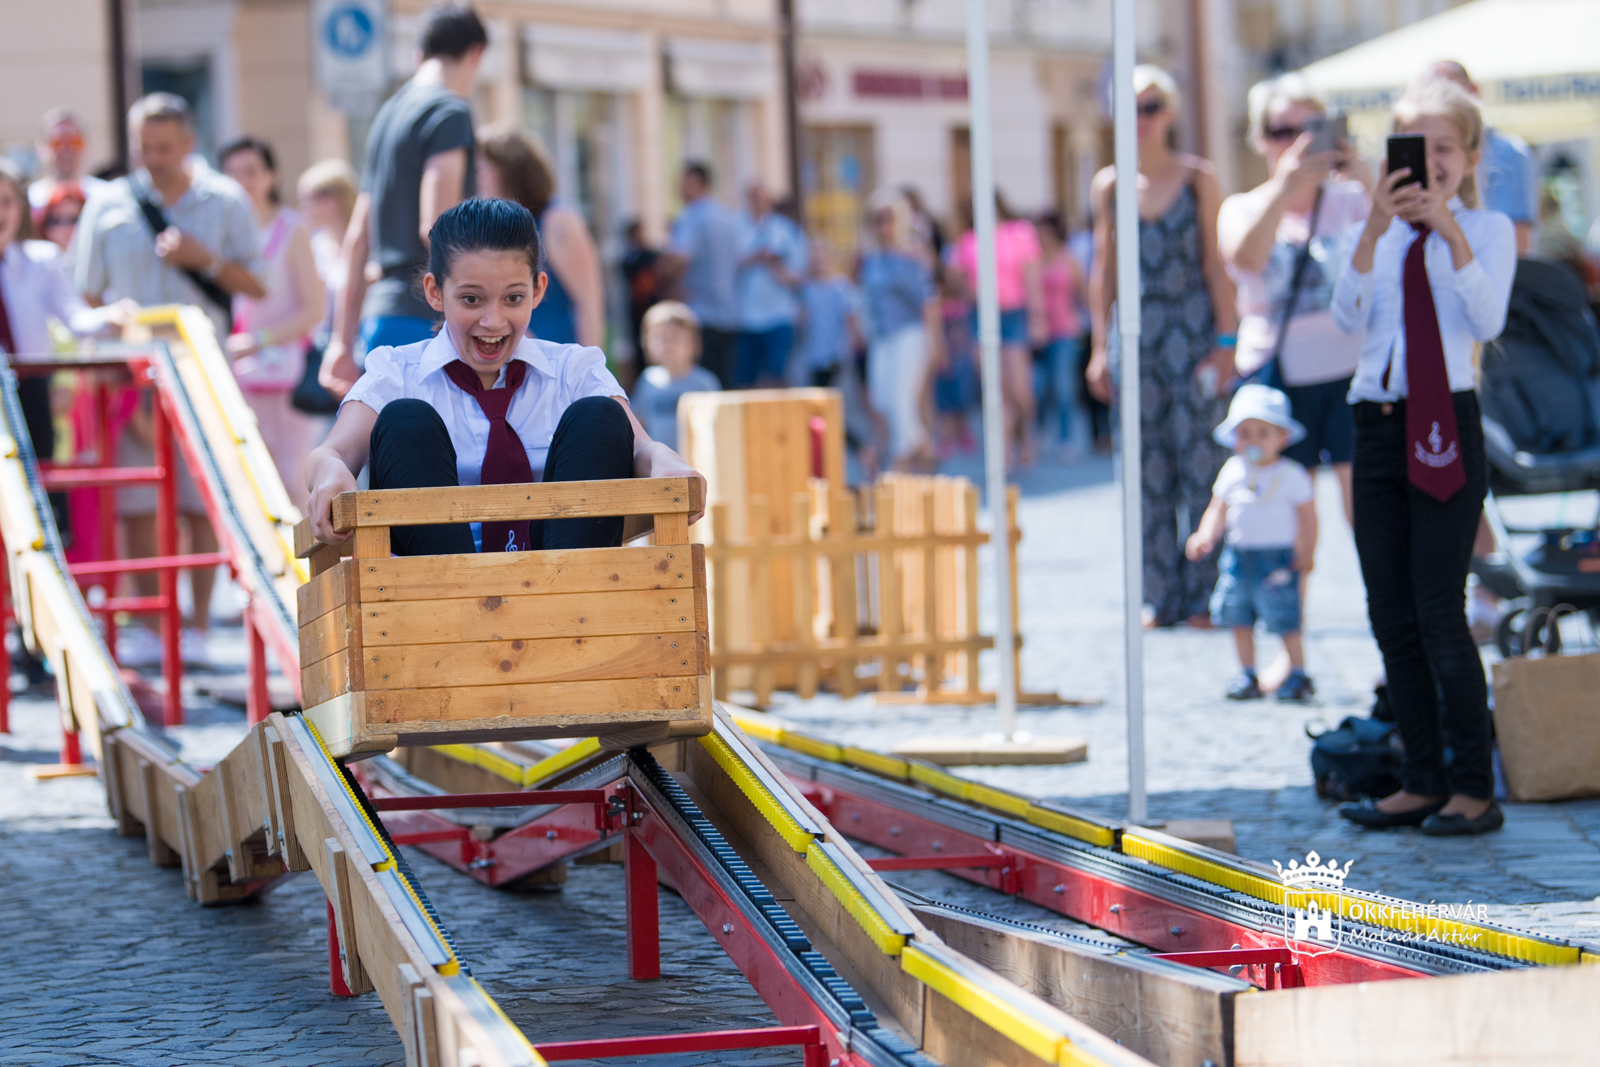 Hetedhét játékfesztivál - vasárnap estig a gyerekeké volt Fehérvár belvárosa